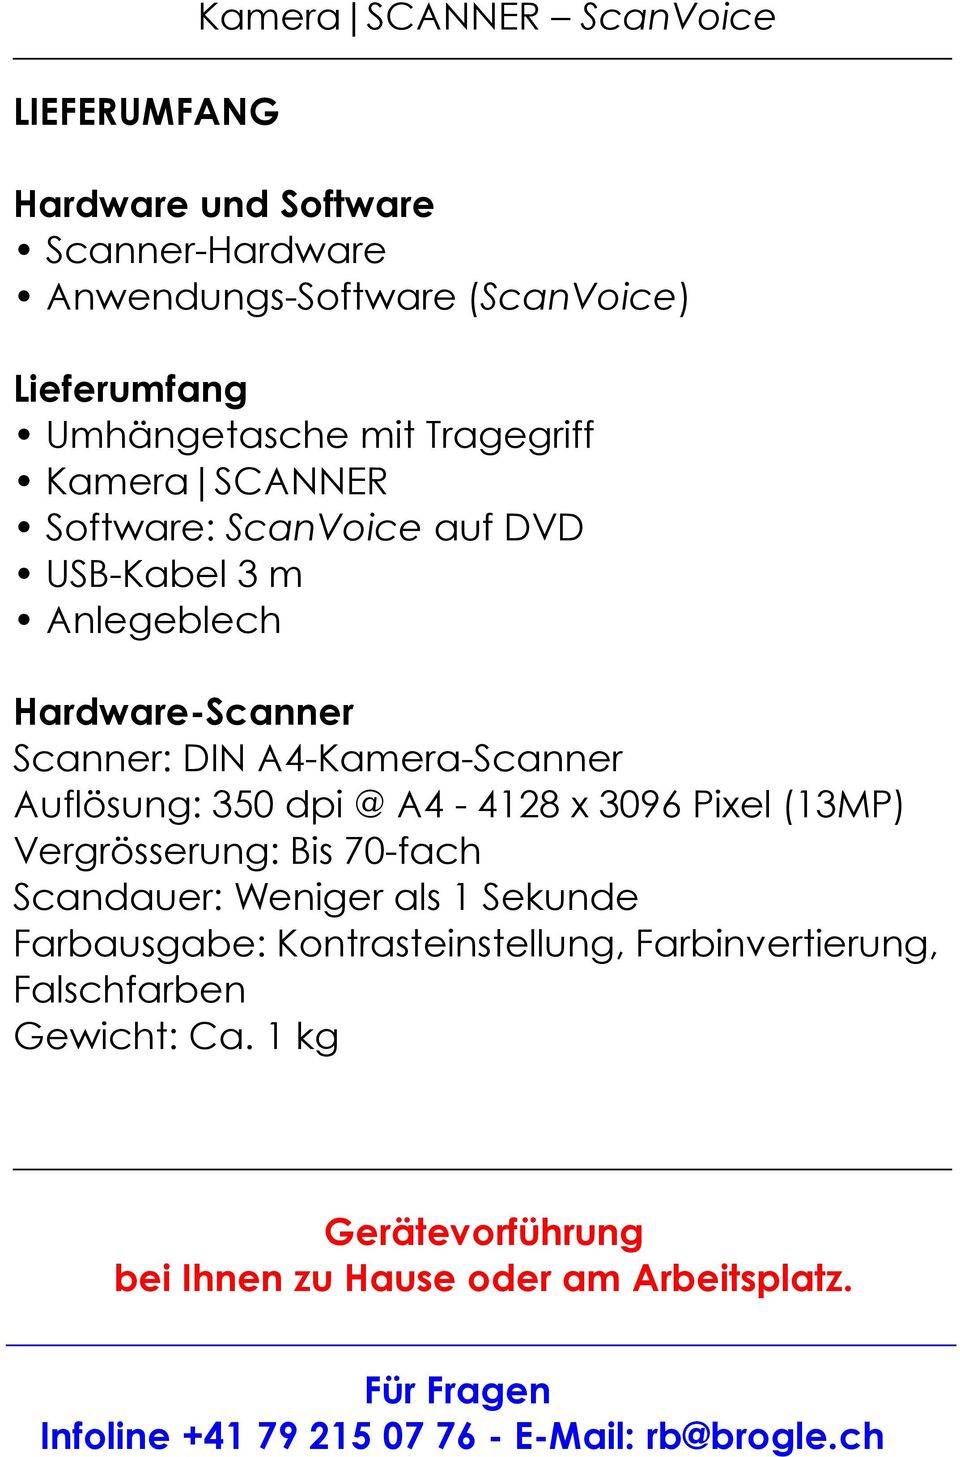 Hardware-Scanner Scanner: DIN A4-Kamera-Scanner Auflösung: 350 dpi @ A4-4128 x 3096 Pixel (13MP) Vergrösserung: